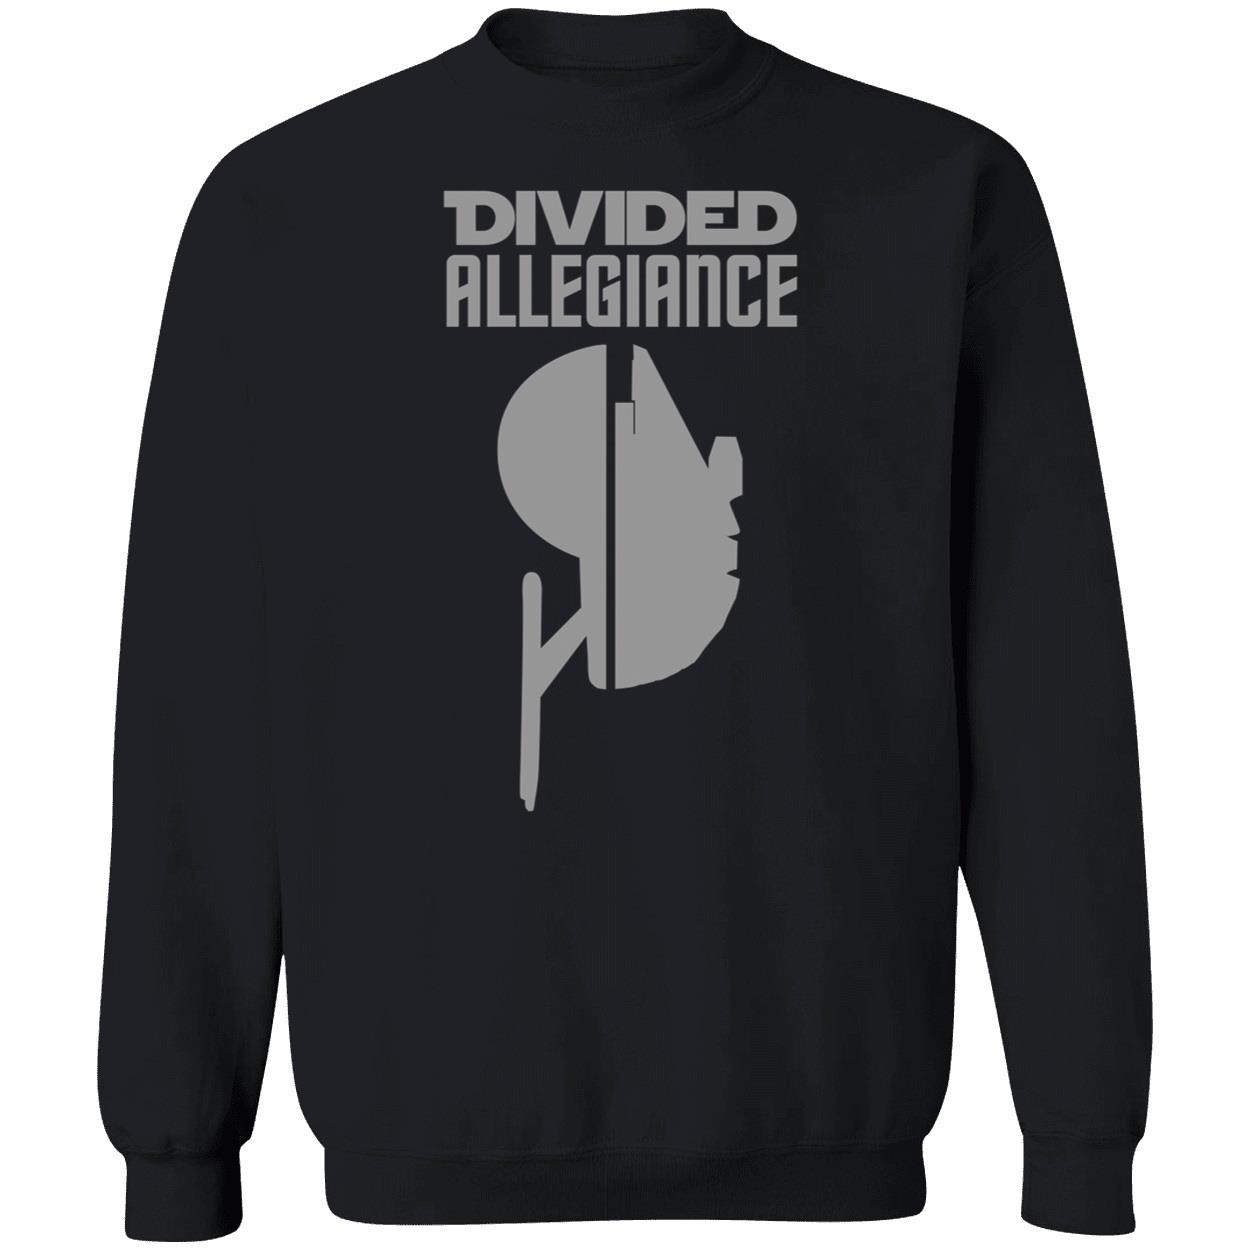 Divided Allegiance Sweatshirt